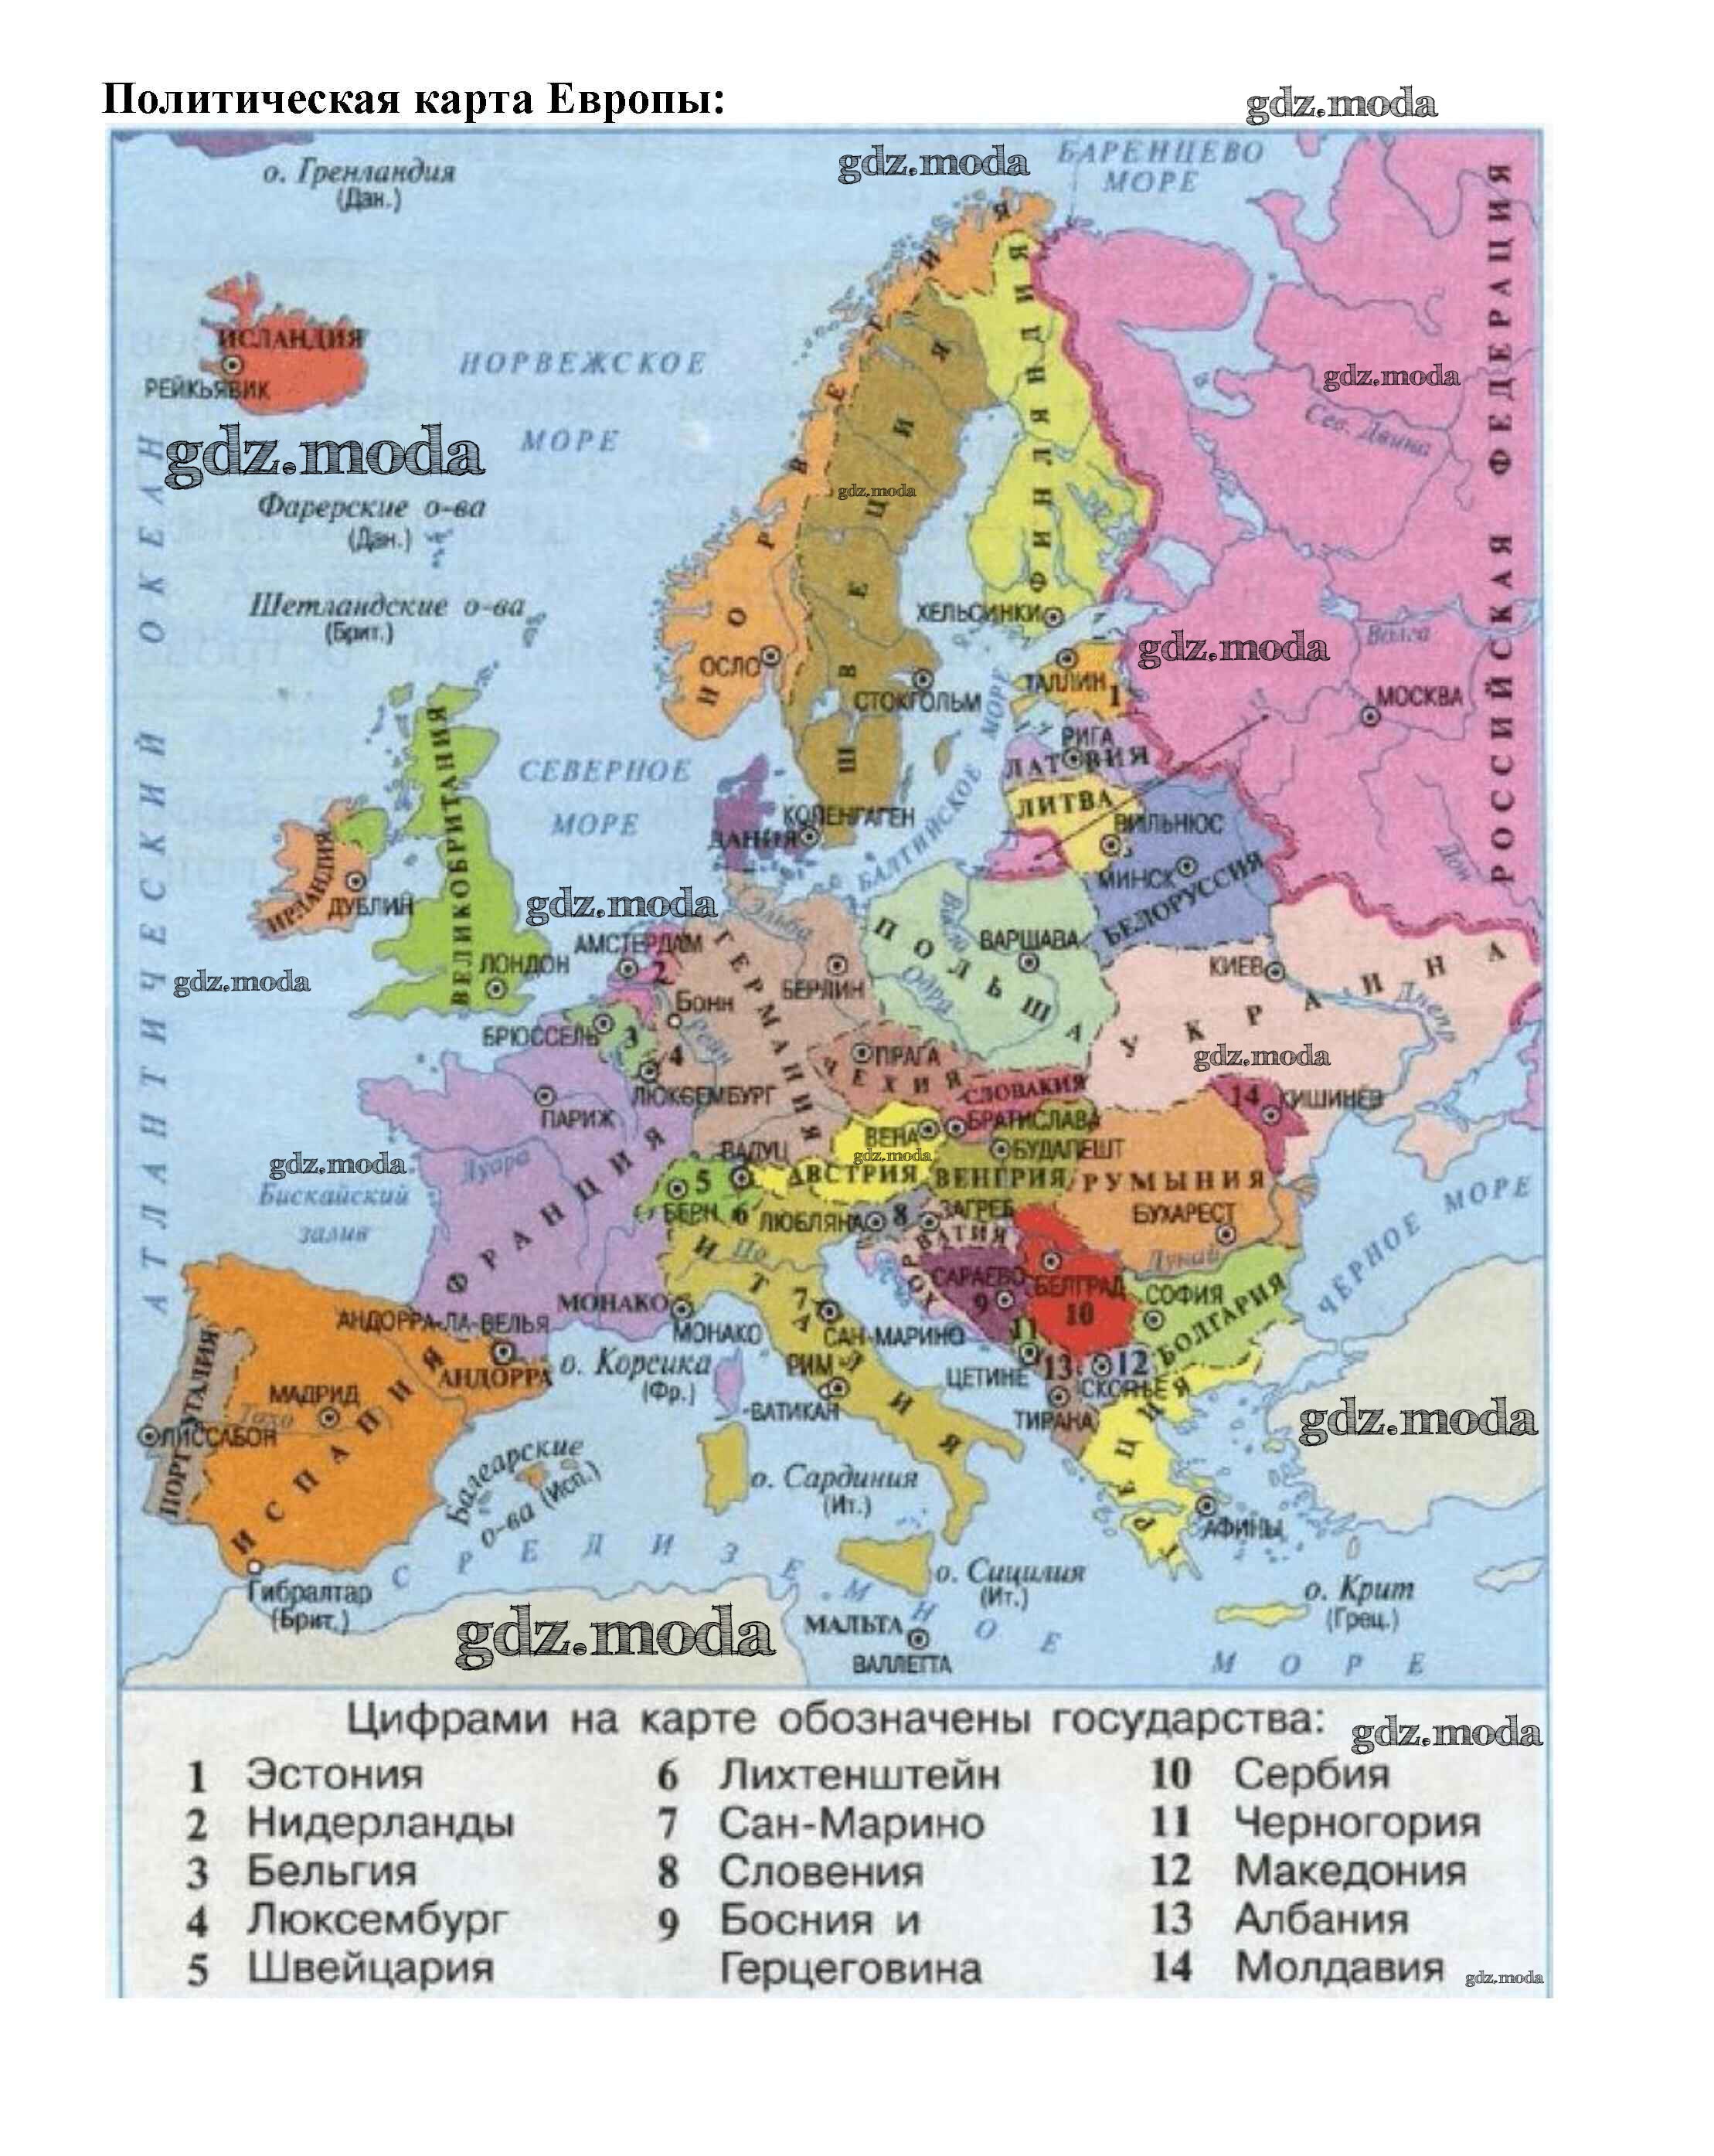 Название европа происходит. Карта зарубежной Европы 11 класс атлас. Политическая карта зарубежной Европы 11 класс. Карта зарубежной Европы с границами государств. Зарубежная Европа атлас политическая.